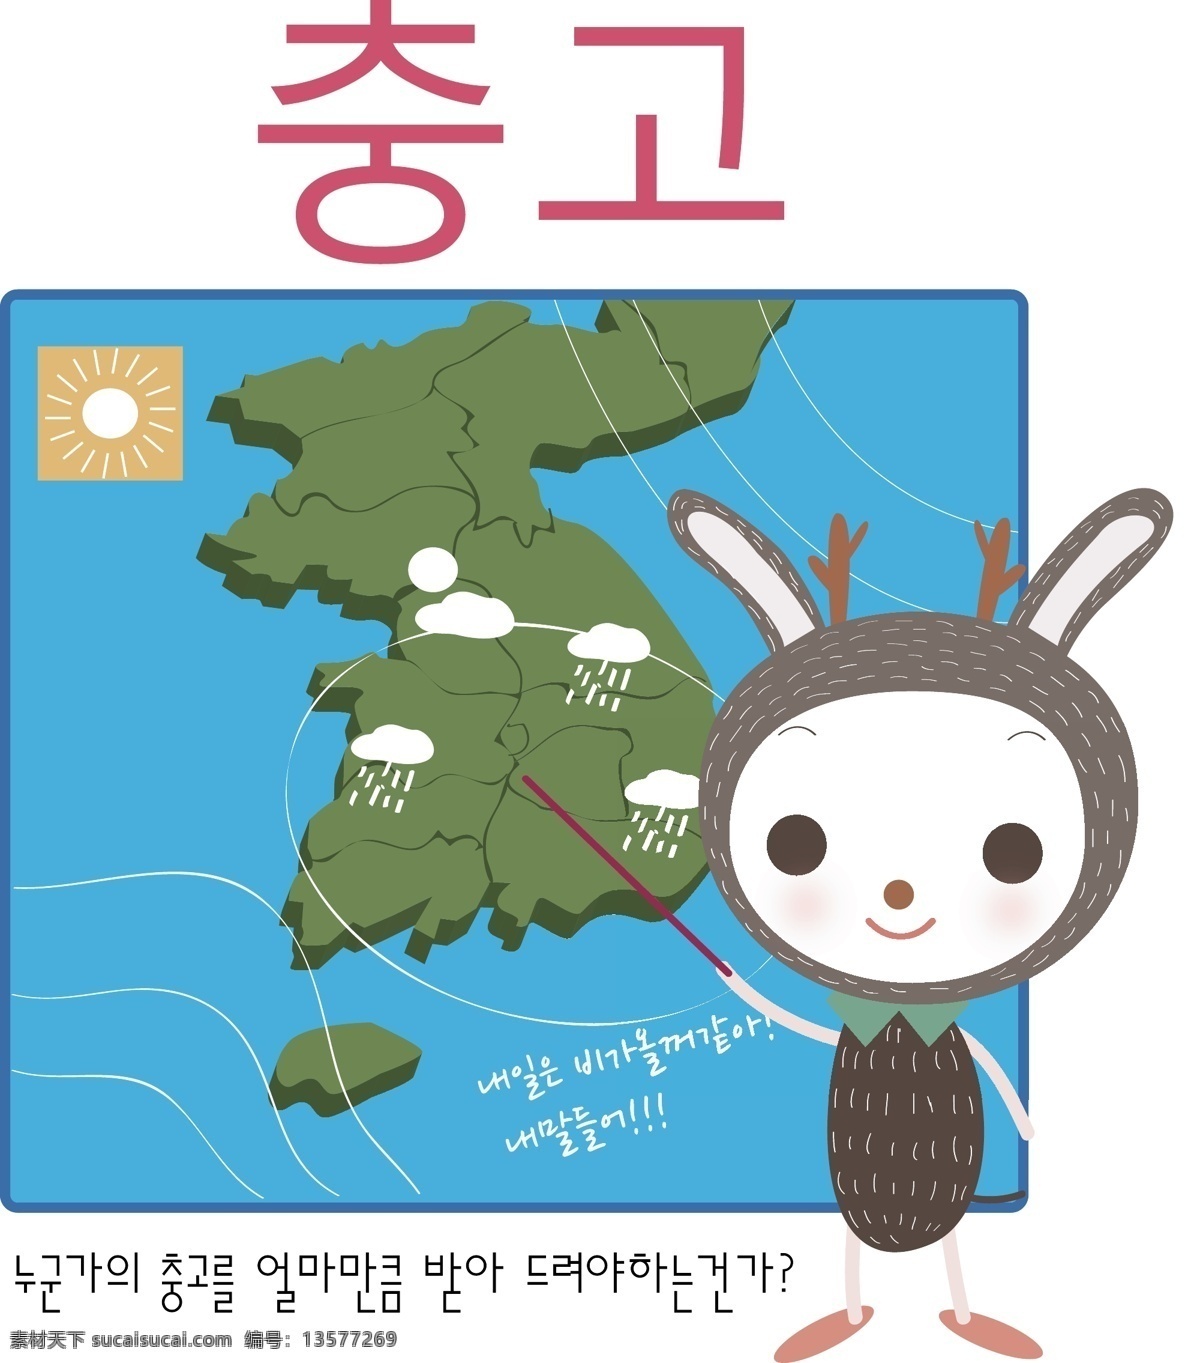 最新 韩国 矢量 卡通 标识cdr 环保cdr 卡通环保 矢量素材 标签标识 矢量图 其他矢量图